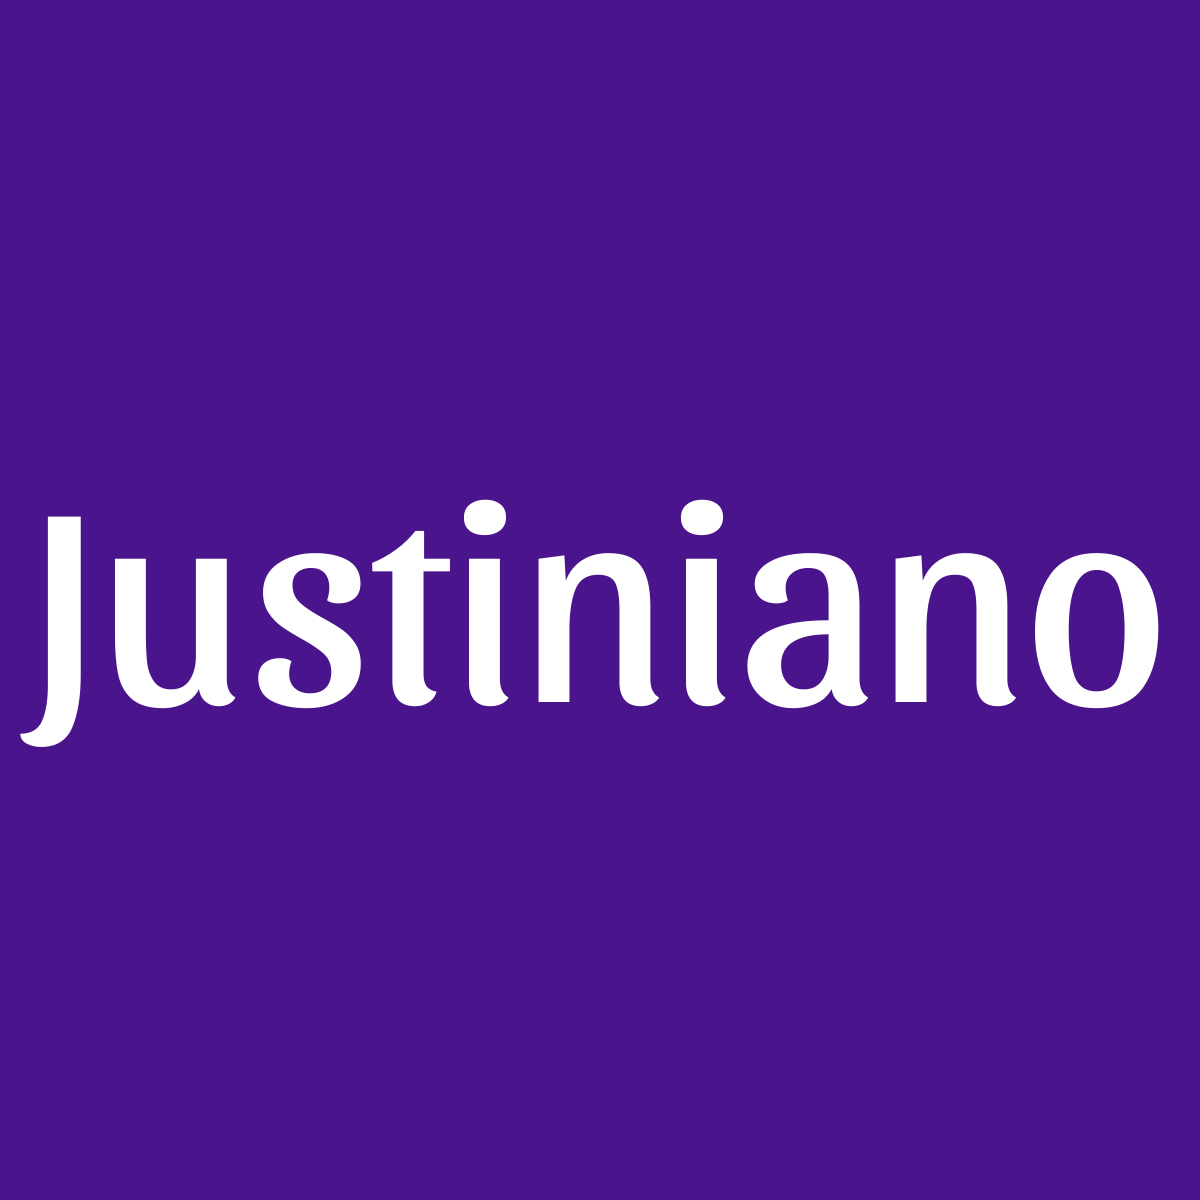 Justiniano : Significado del nombre de hombre Justiniano